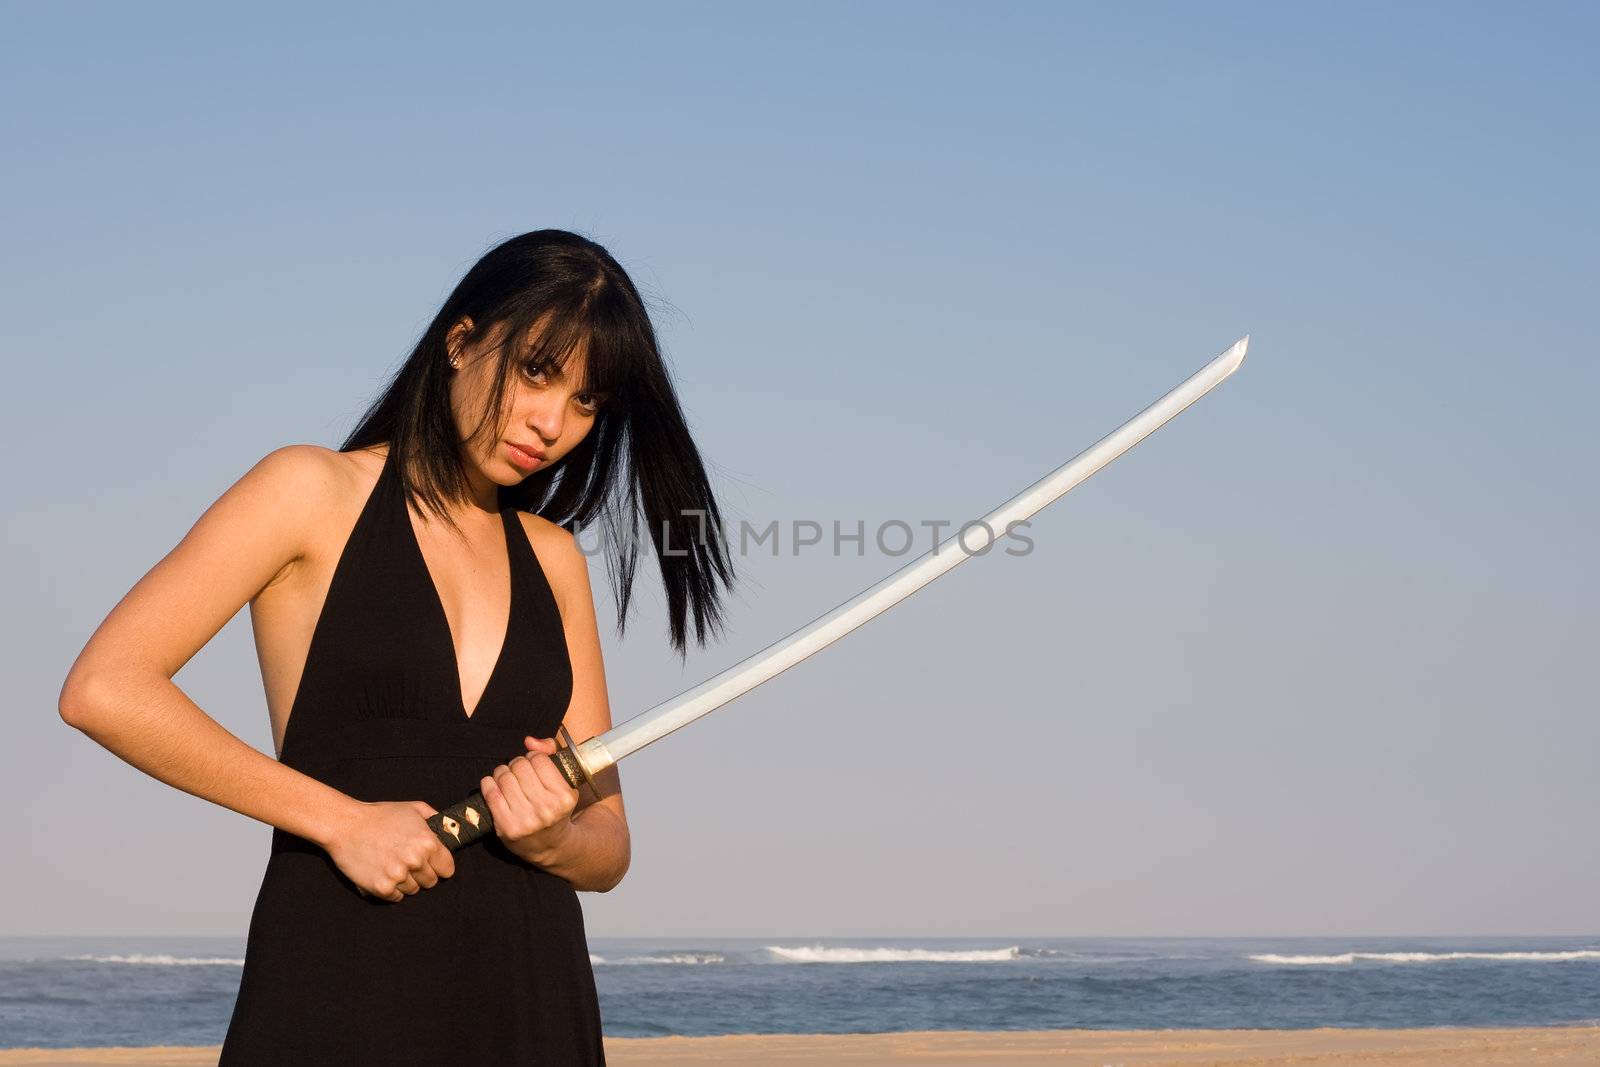 Sword Lady by nightowlza